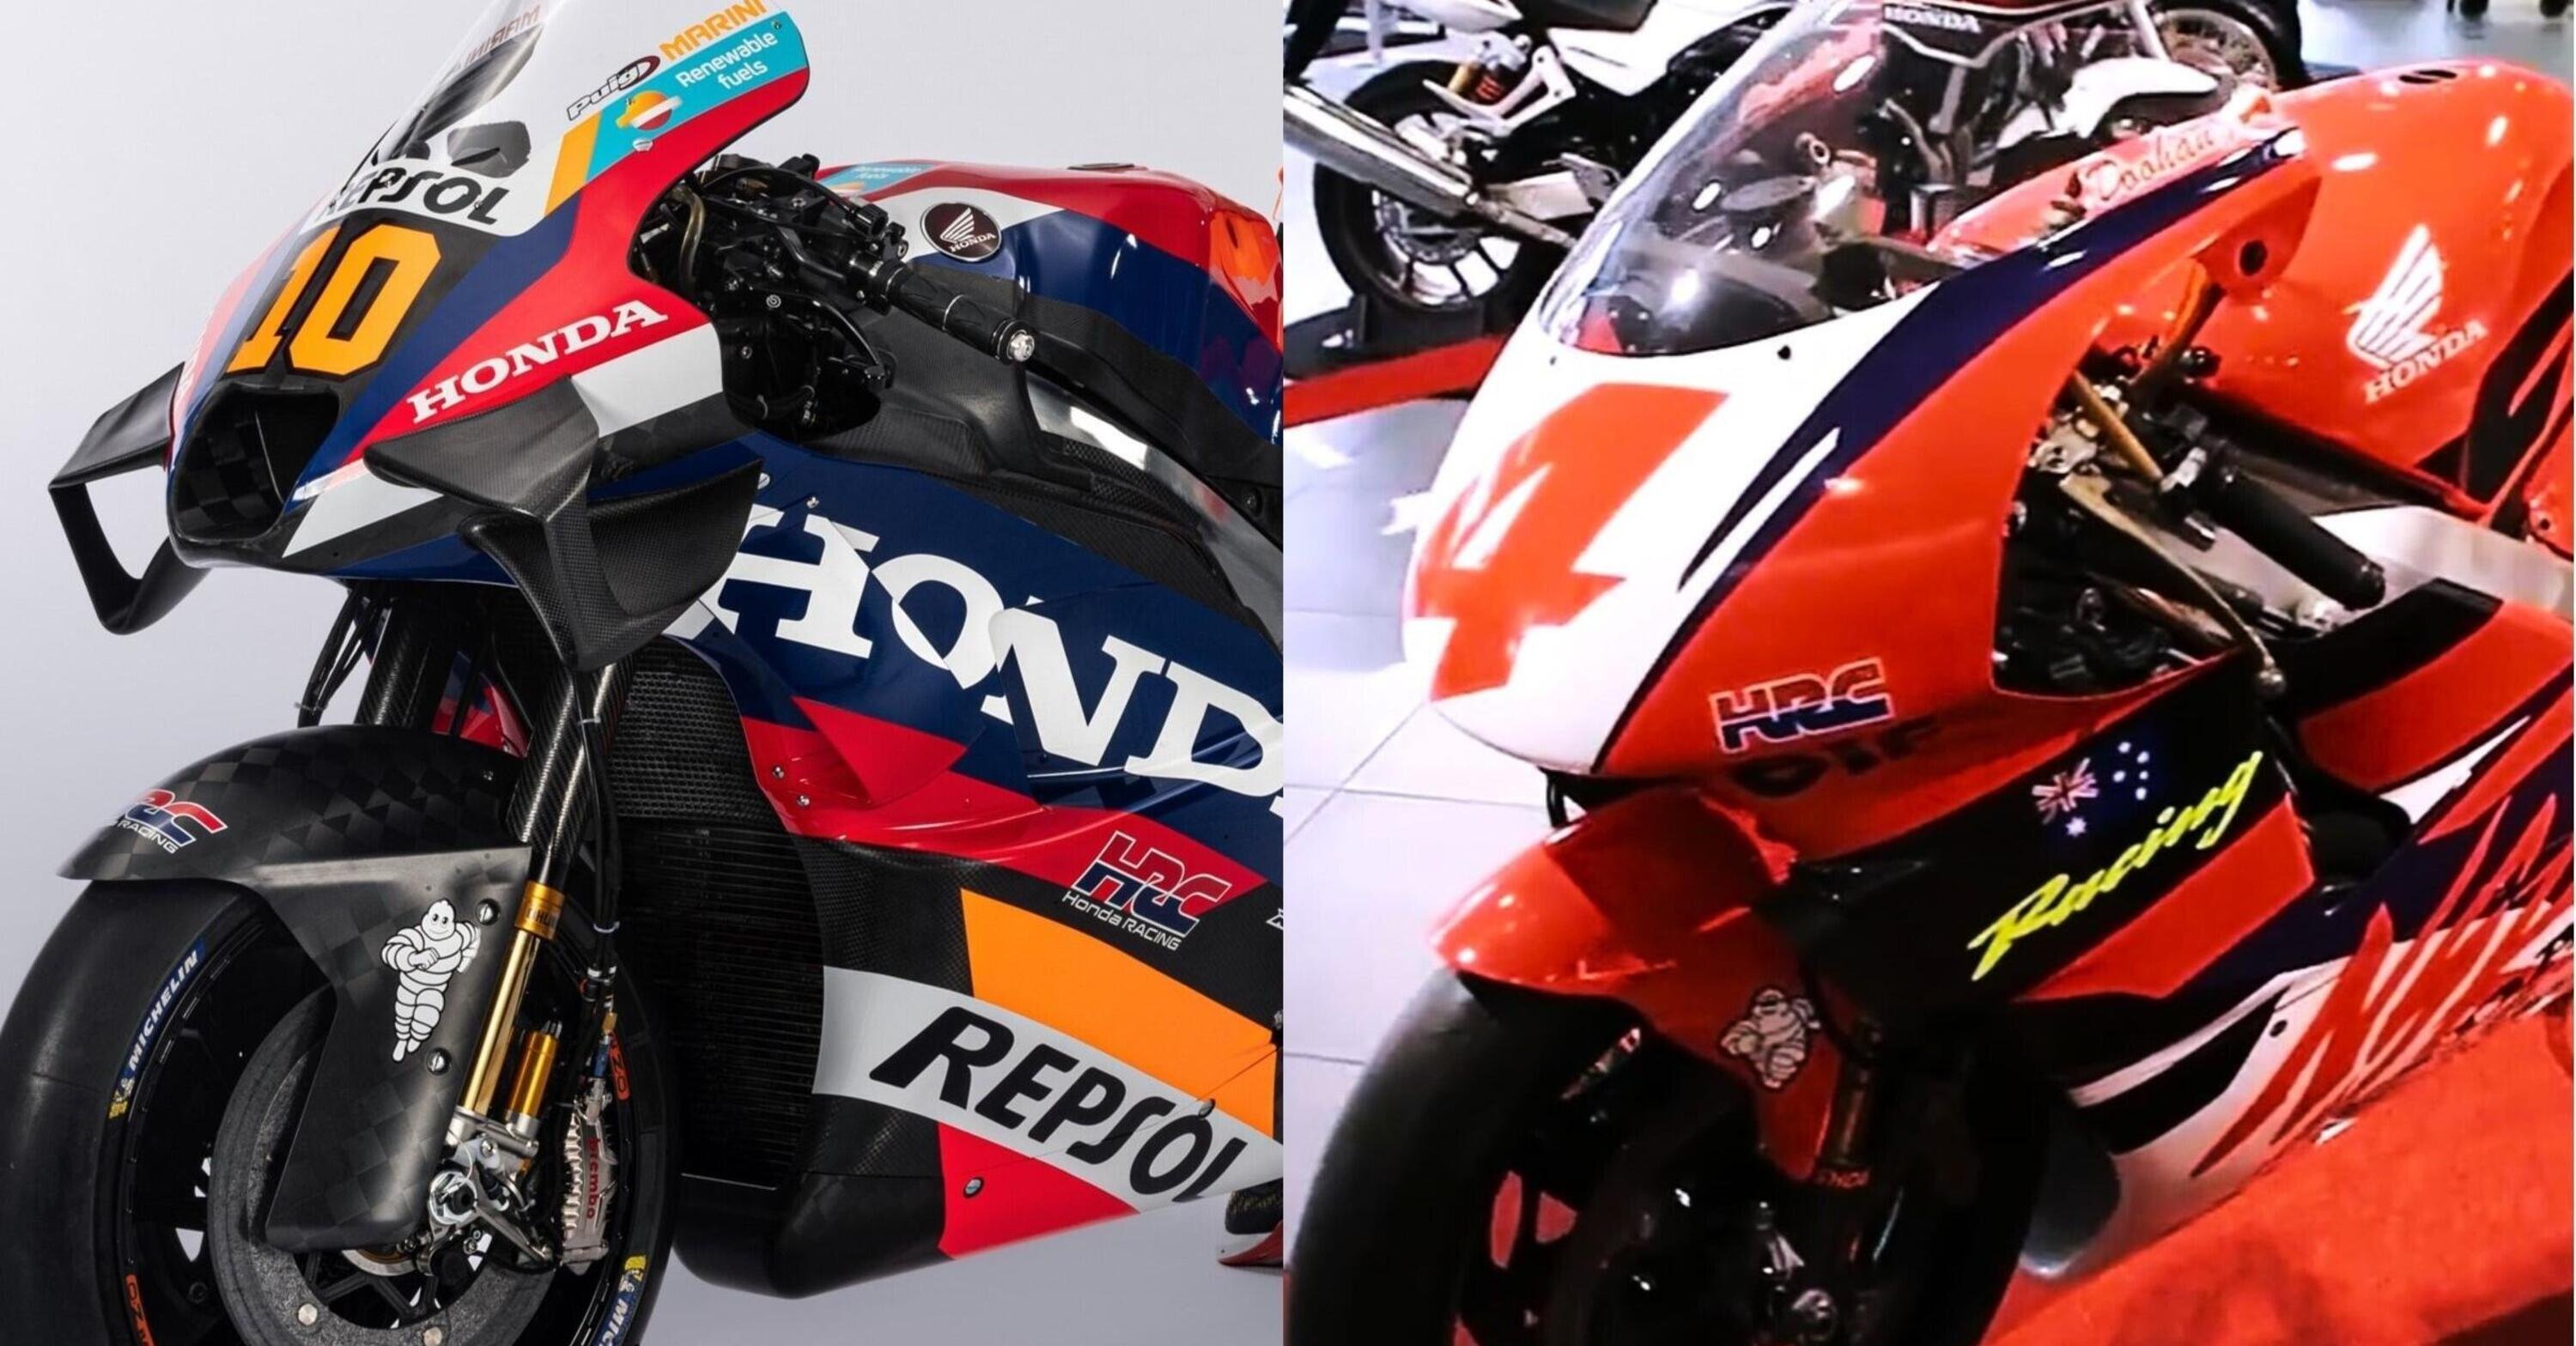 MotoGP 2024. HRC, ritorno al&hellip; rosso, blu e bianco? Mmmh... Confronto tra la nuova RC213V e la NSR 500 di Mick Doohan